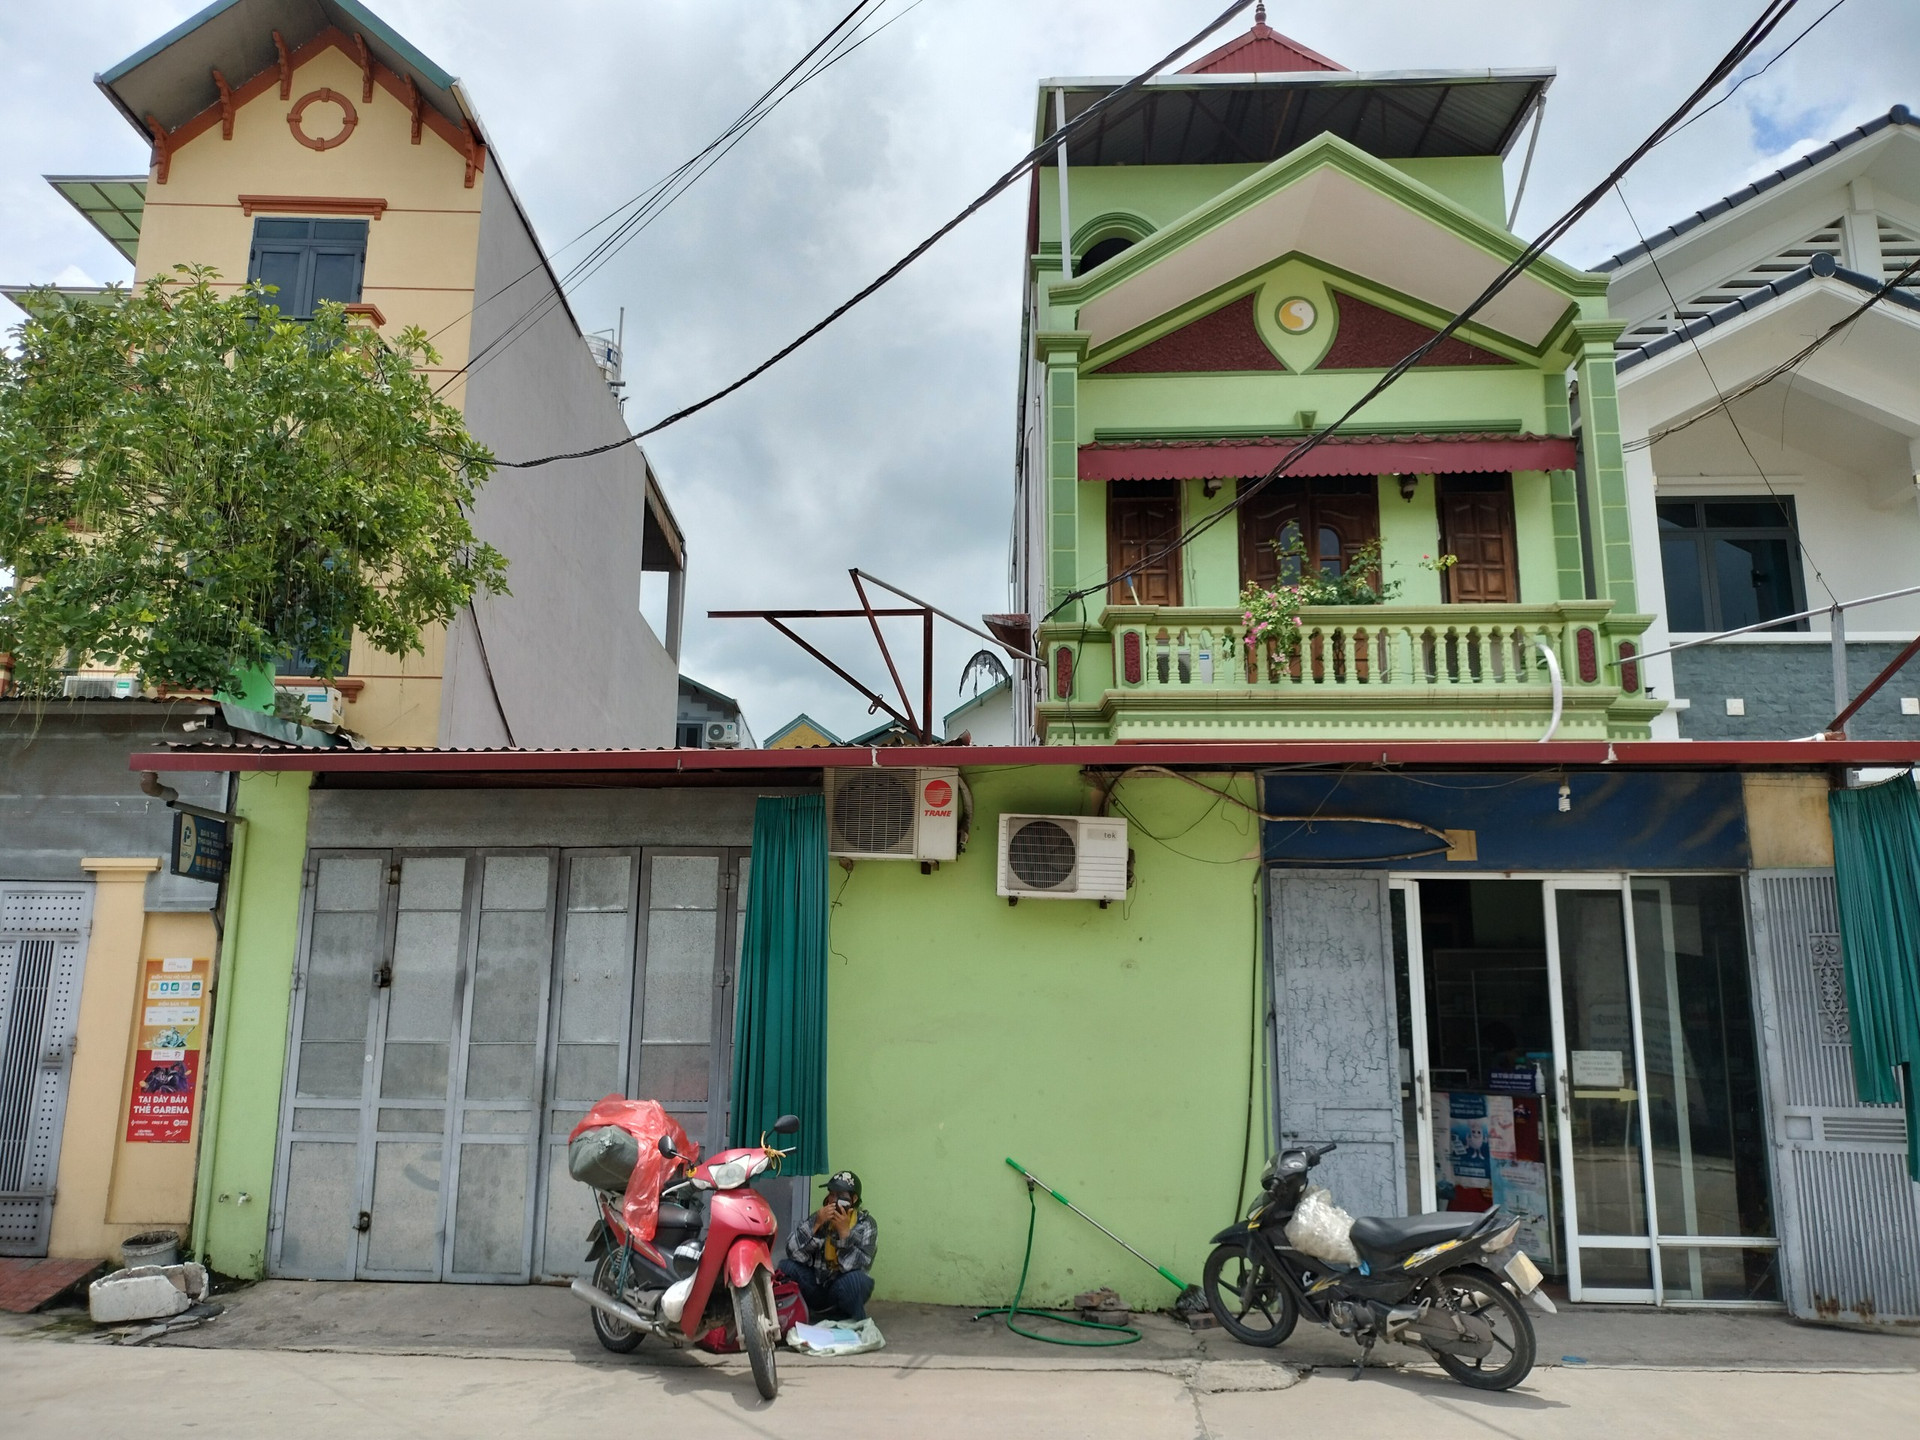 “Kỳ lạ” đấu giá nhà đất thi hành án tại Thanh Trì, Hà Nội (Bài 8): Cục THADS TP Hà Nội cung cấp thông tin sai sự thật cho báo chí